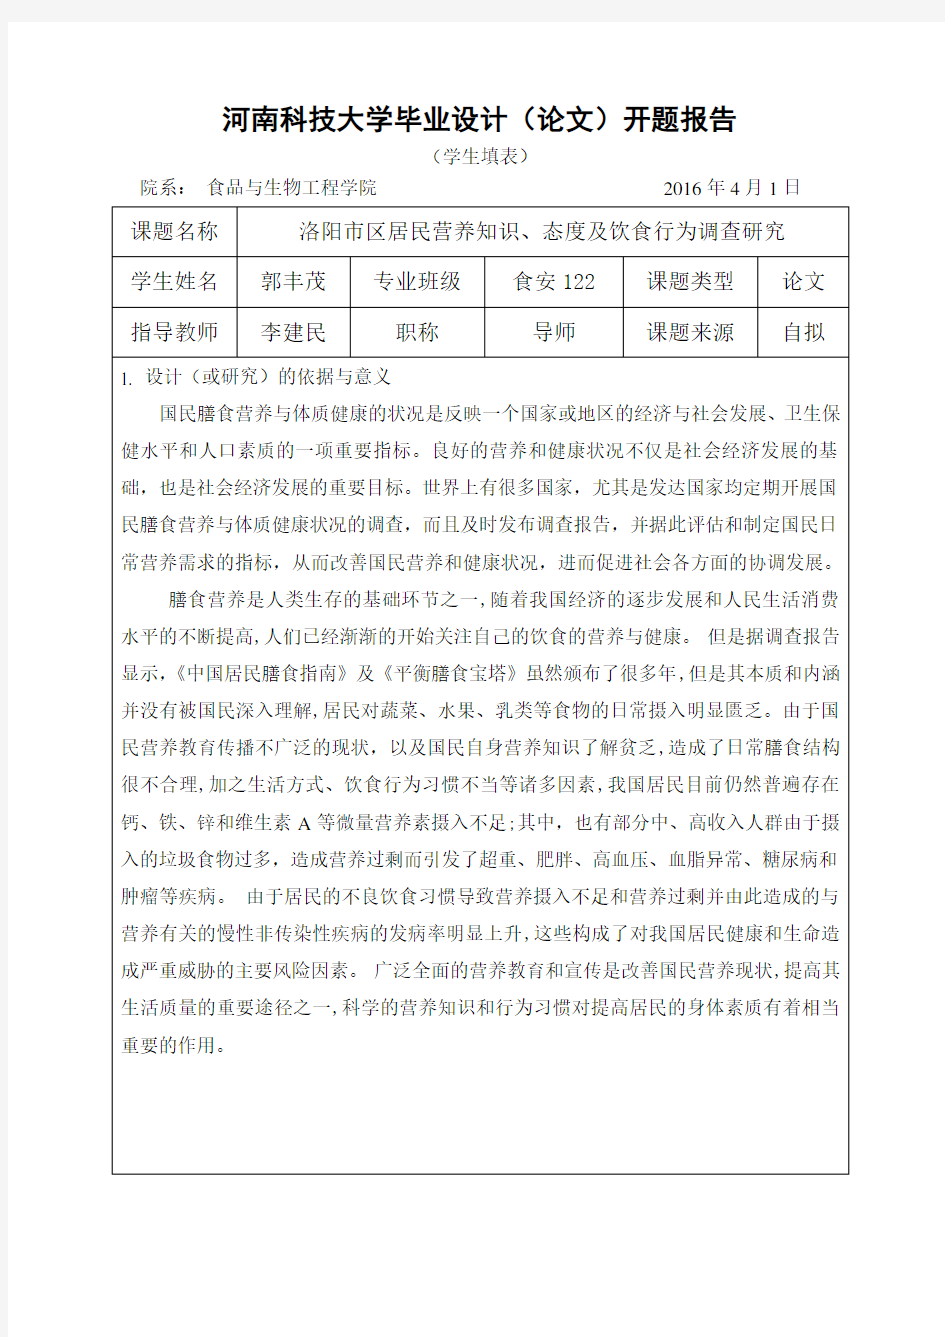 河南科技大学毕业设计(论文)开题报告